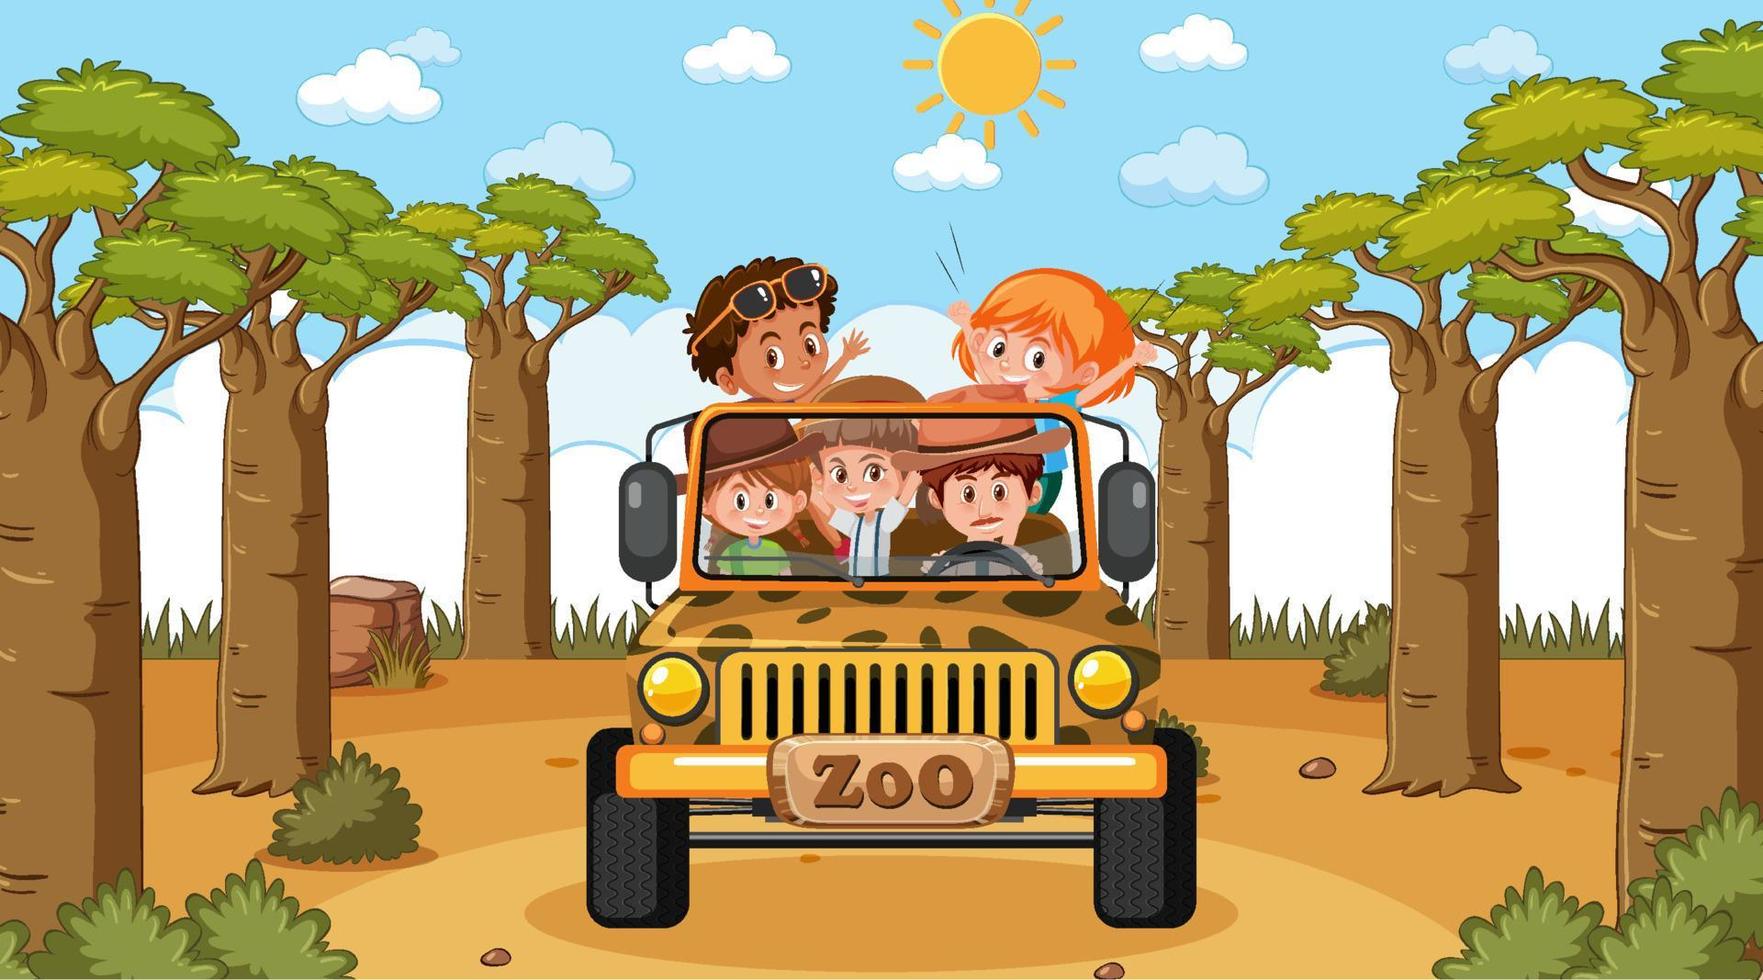 zoo di giorno in scena con molti bambini in una jeep vettore